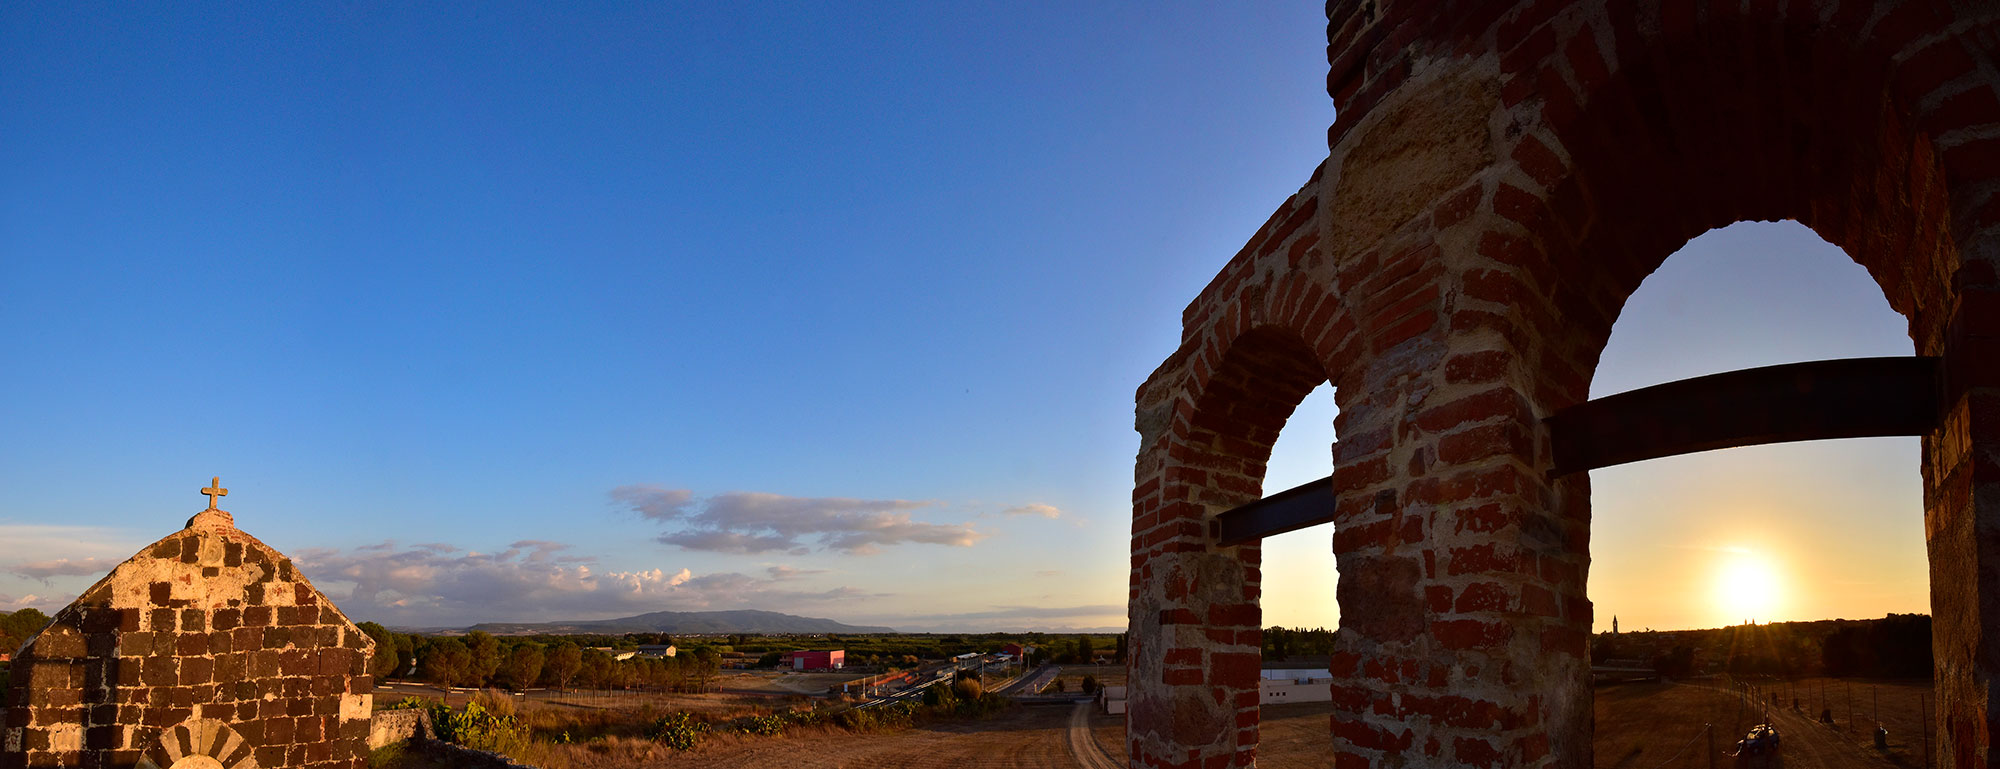 Solarussa. Panoramica vista dalla chiesa di San Gregorio Magno